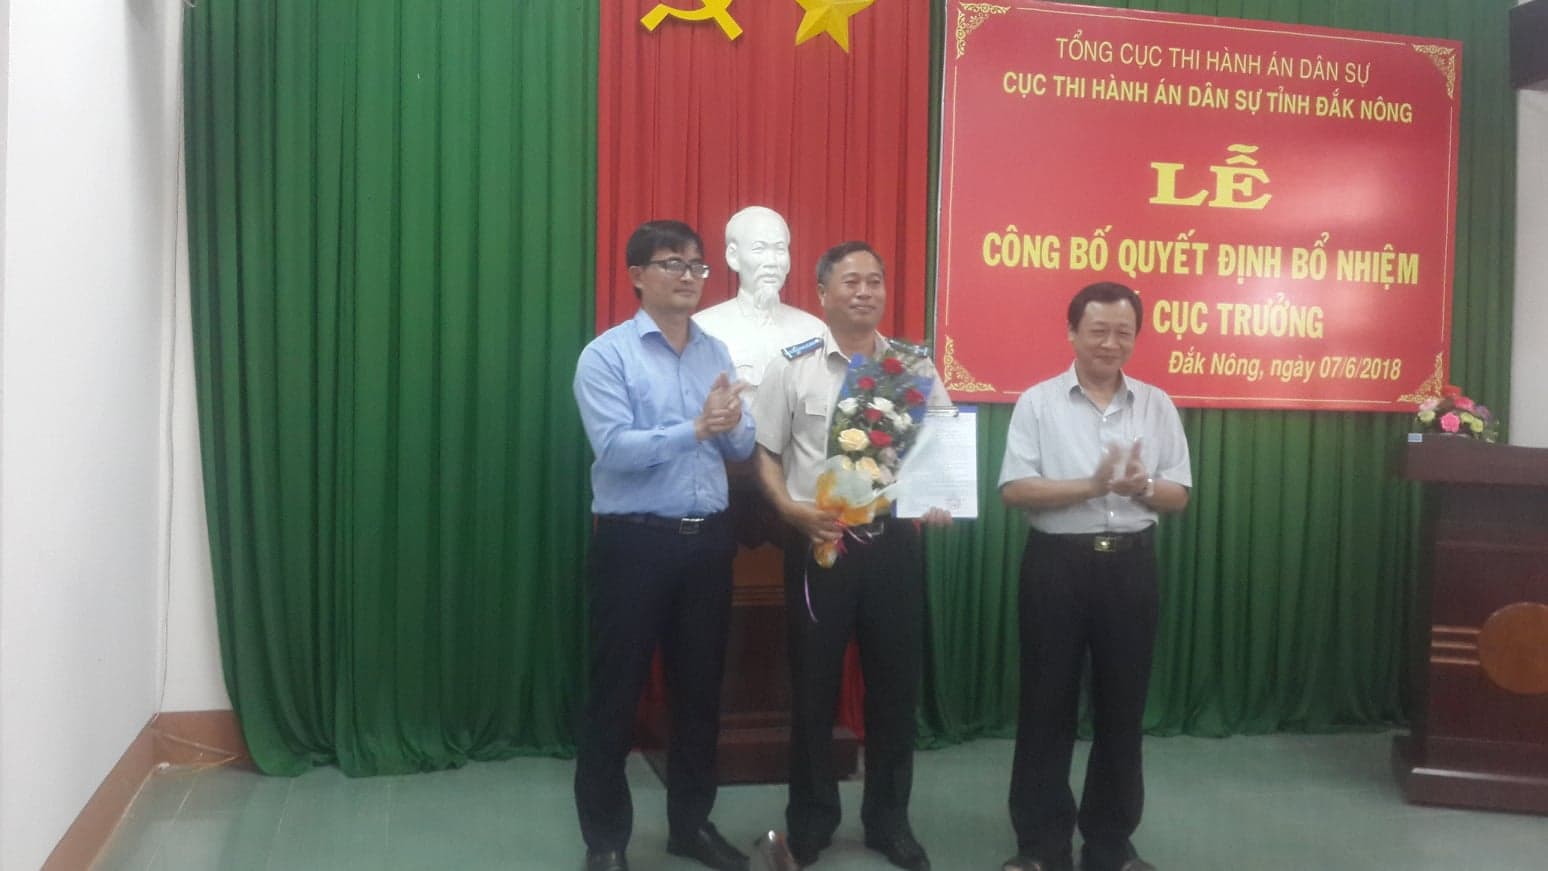 Công bố quyết định bổ nhiệm lại Phó Cục trưởng Cục Thi hành án dân sự tỉnh Đăk Nông